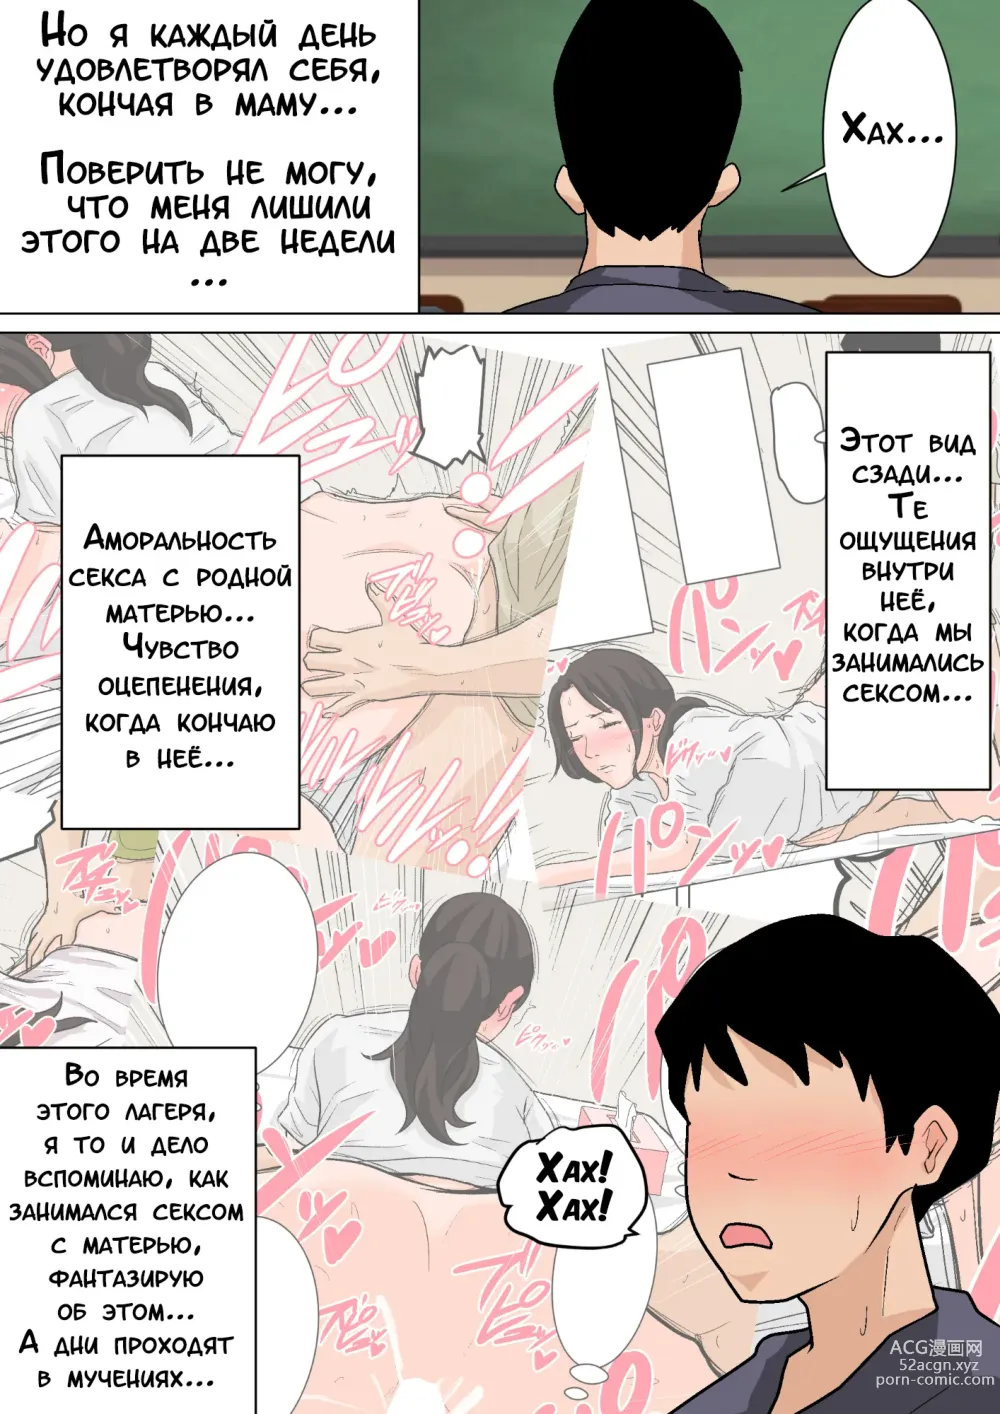 Page 9 of doujinshi Ежедневное снятие сексуального напряжения вместе с мамой!